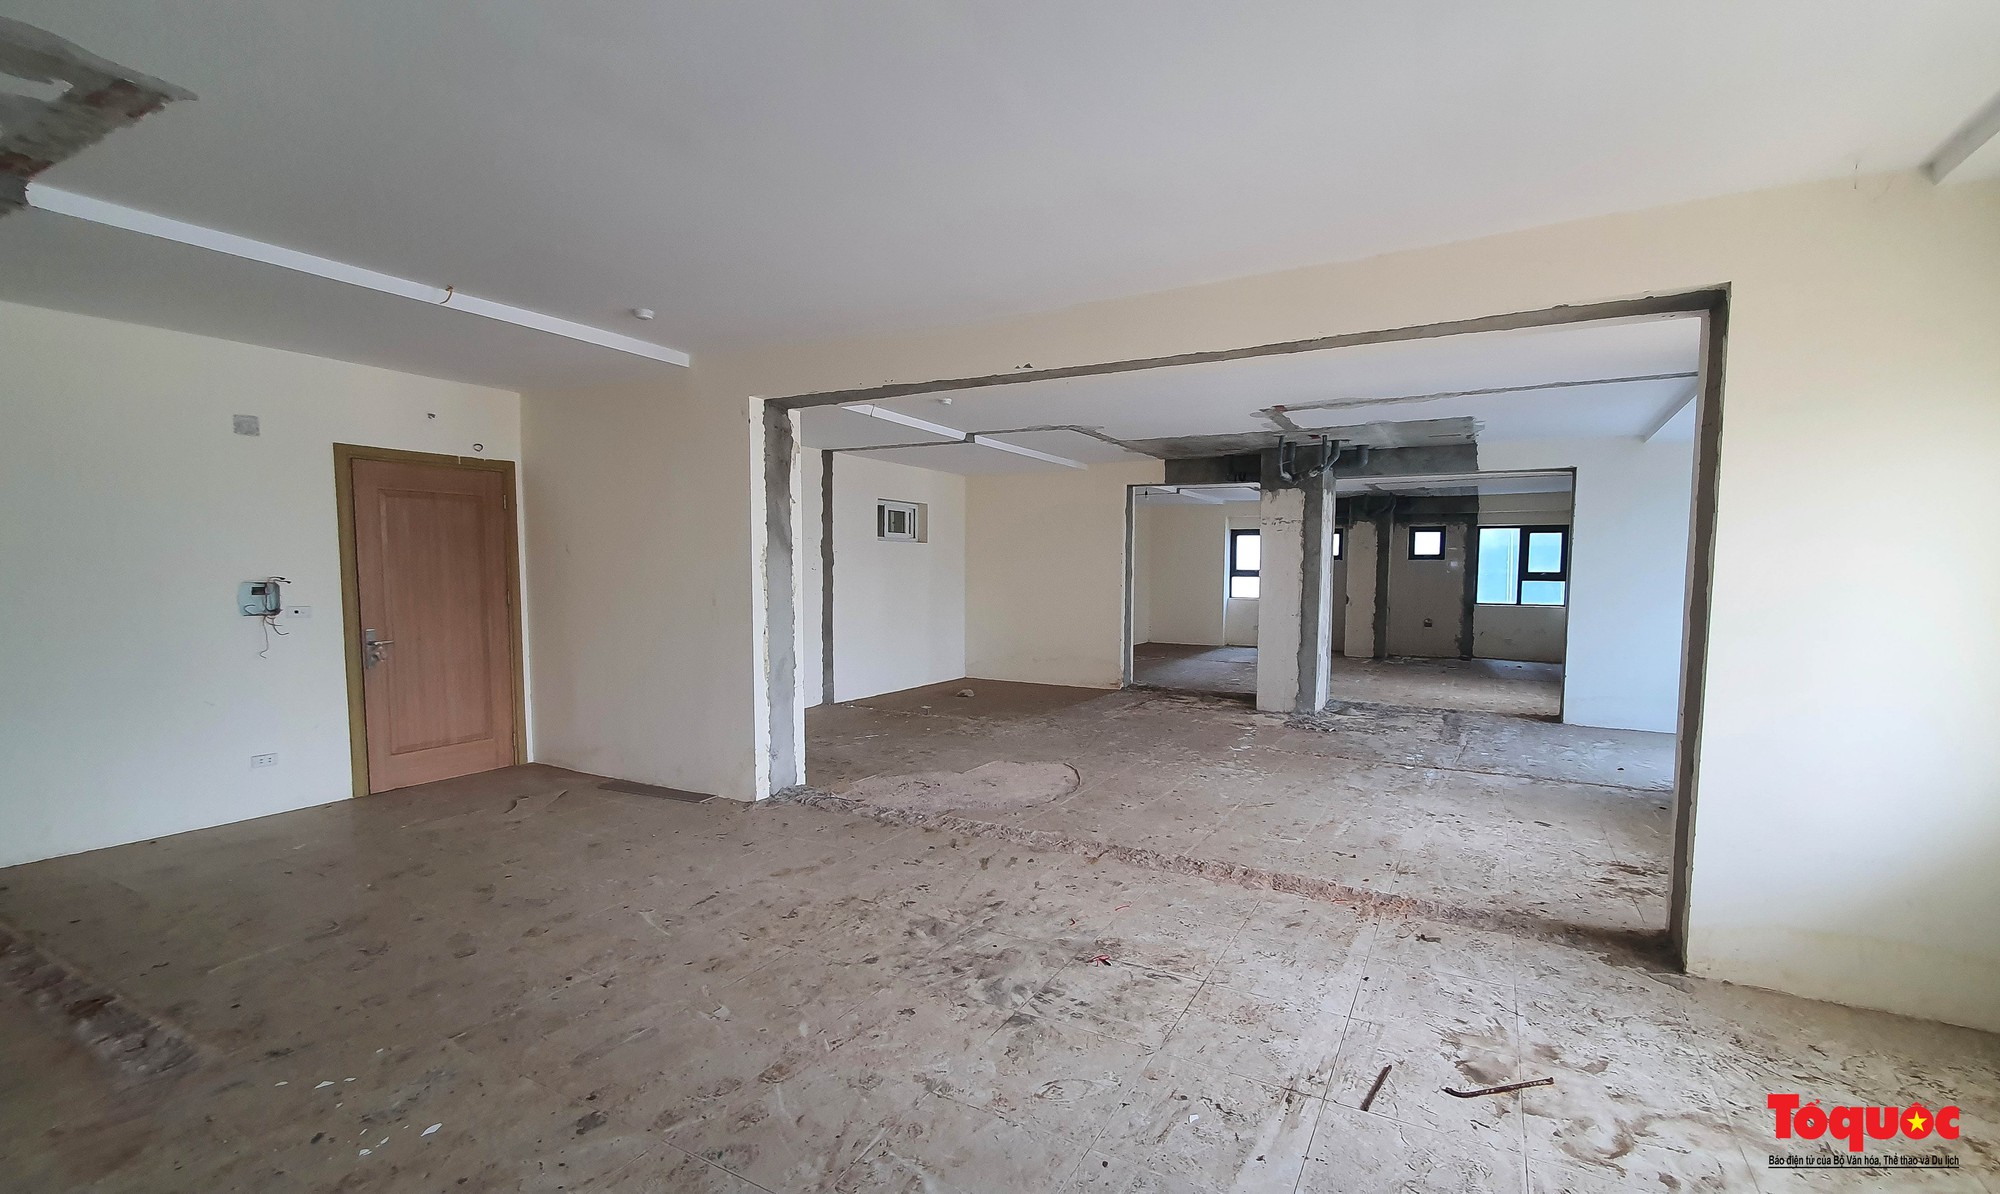 Hình ảnh tháo dỡ hàng chục căn hộ xây trái phép tại Tổ hợp khách sạn và căn hộ cao cấp Sơn Trà  - Ảnh 14.